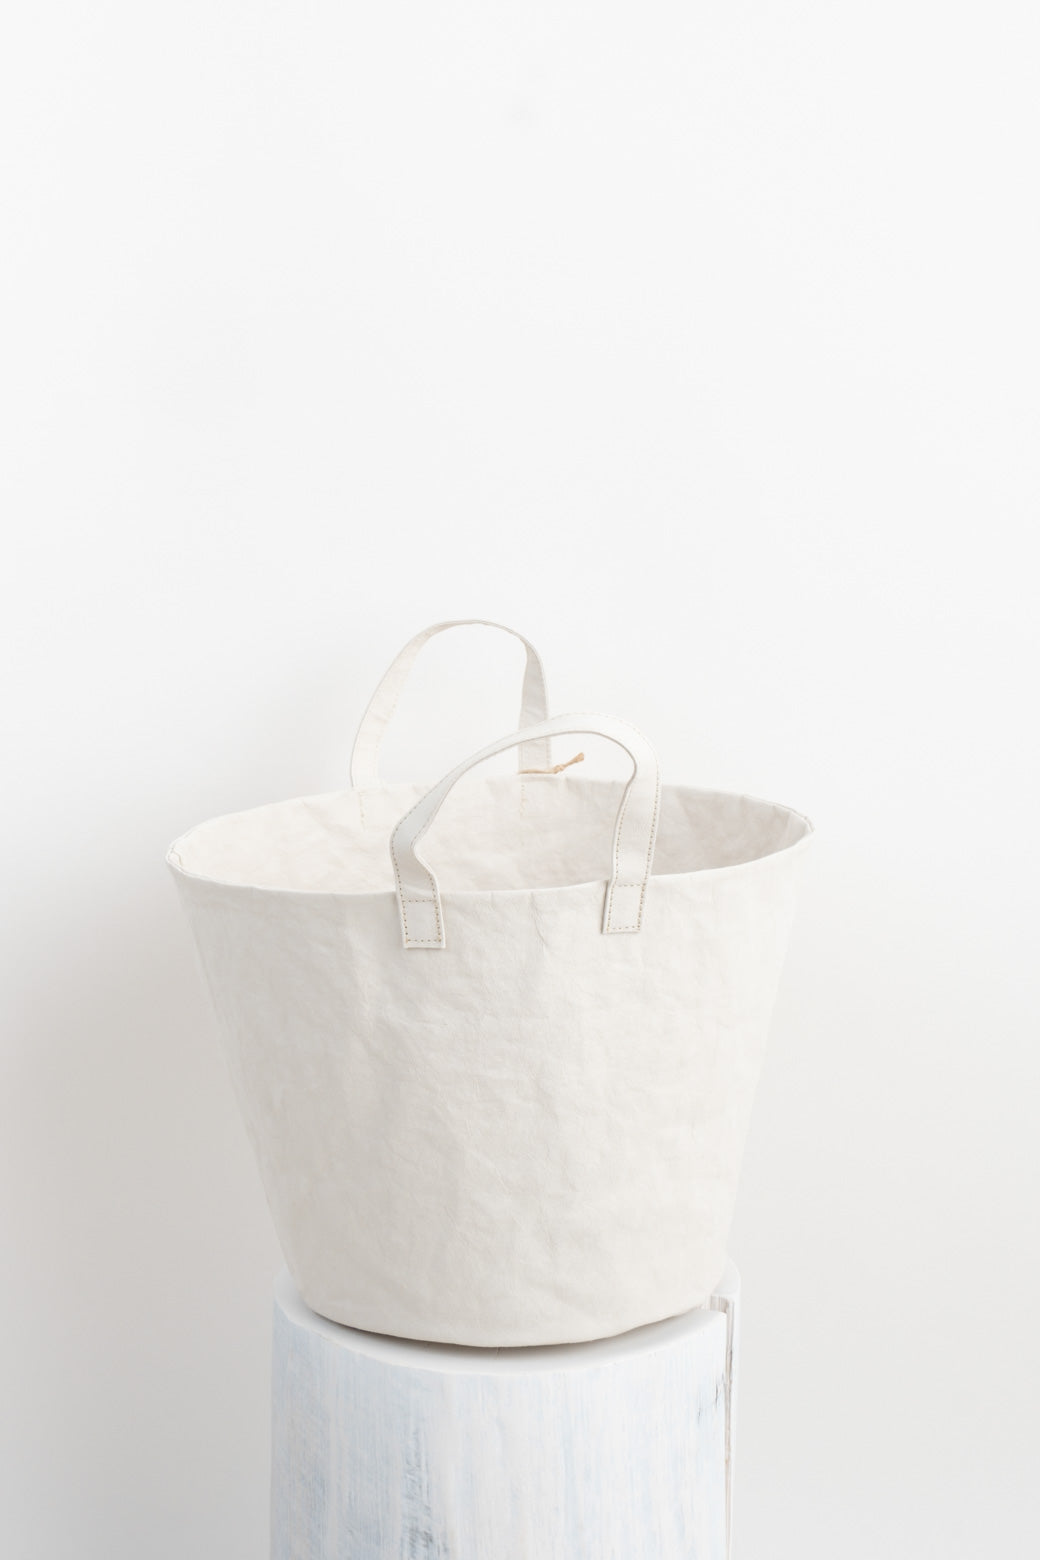 Uashmama Medium Paniere Bucket in White